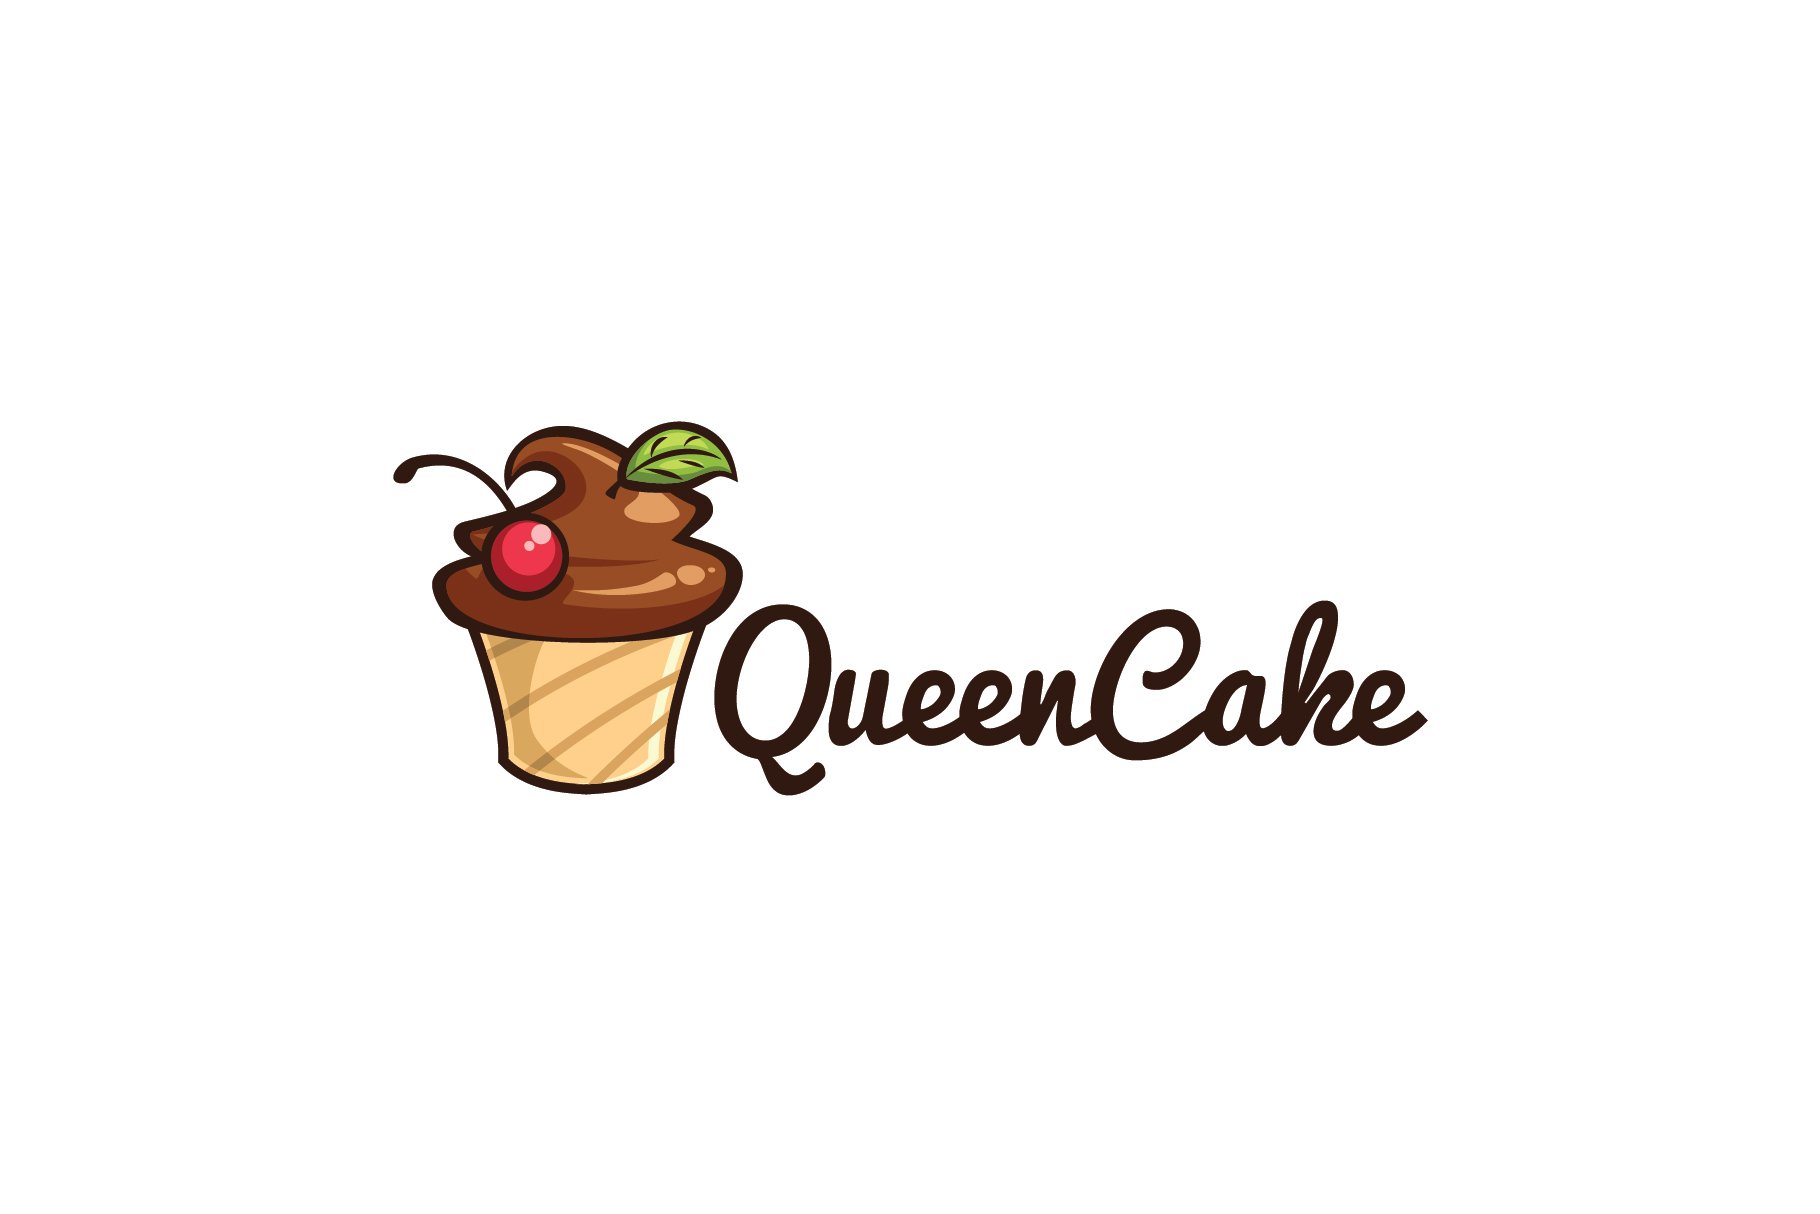 Queen Cake Logo cover image.